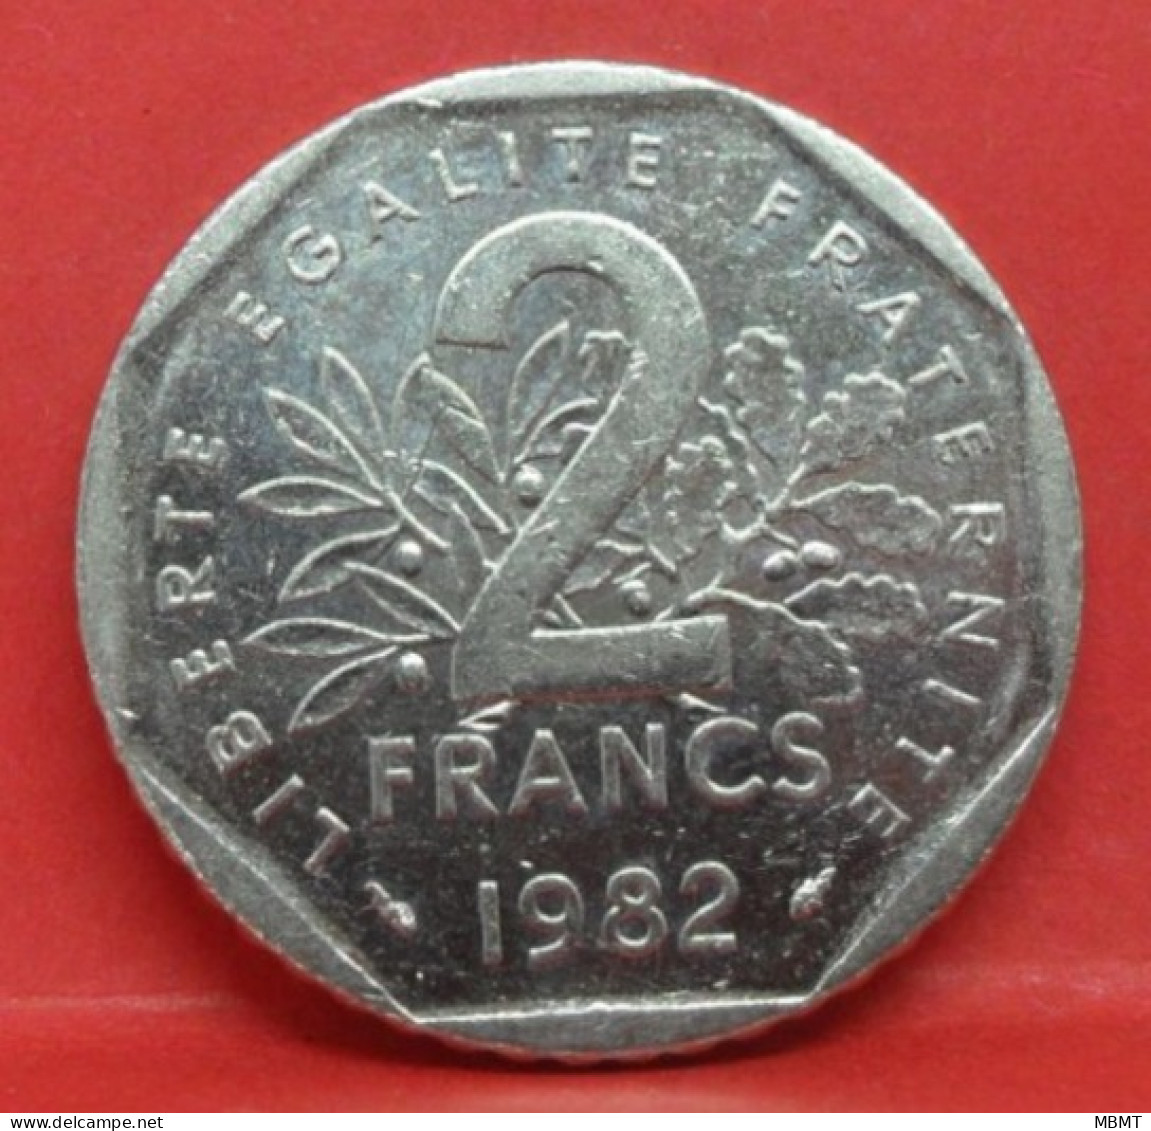 2 Francs Semeuse 1982 - SUP - Pièce Monnaie France - Article N°804 - 2 Francs